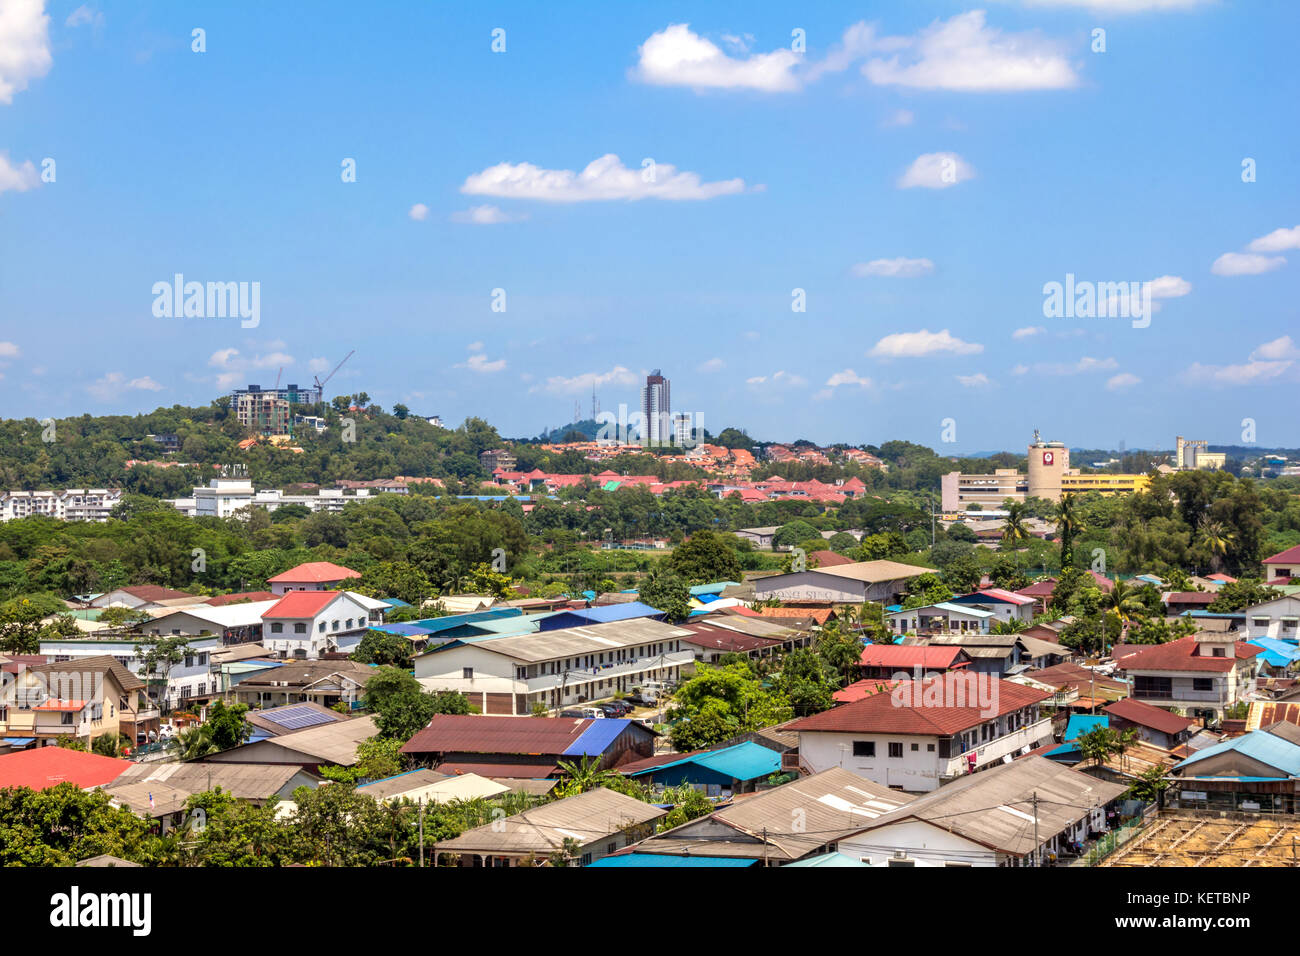 Selangor, 22 oct 2017 Malasia: vista de Kampung baru Sungai Buloh ciudad tomada desde el techo superior de la torre Foto de stock